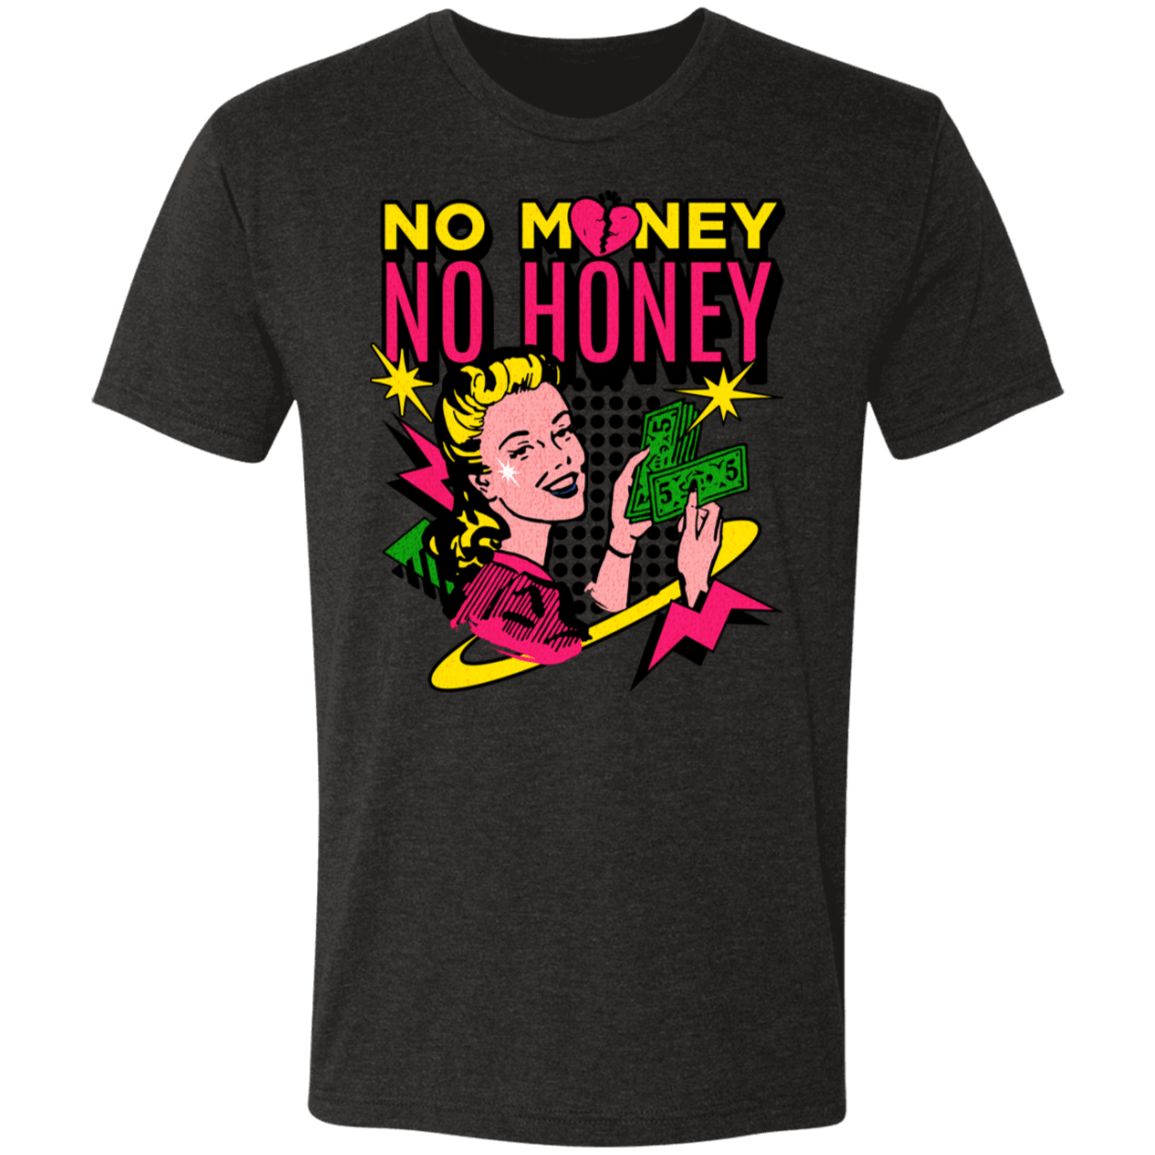 No Money No Honey Gym Tee - T-Shirts